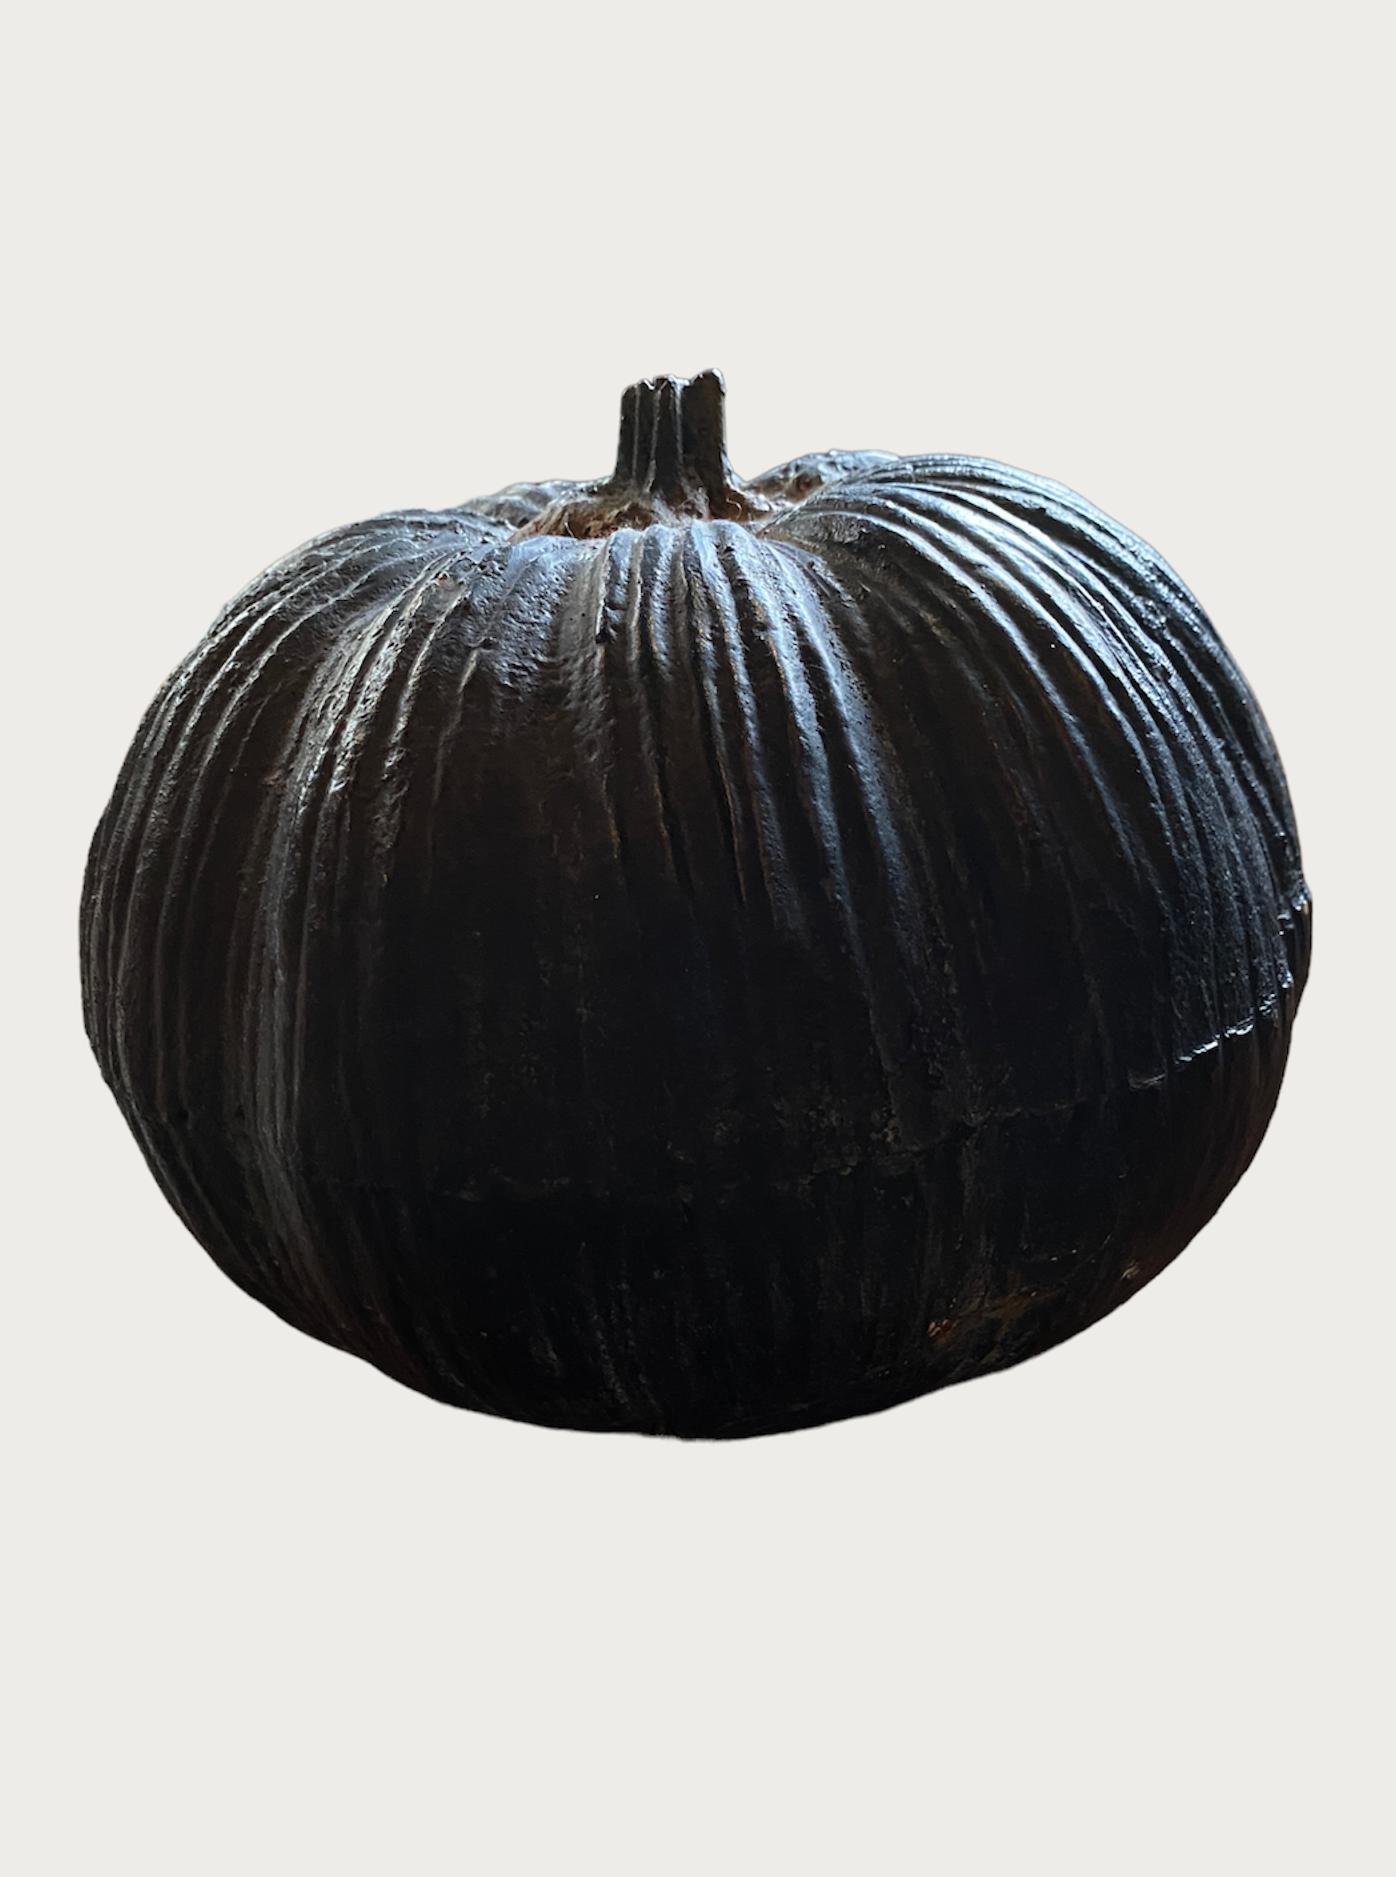 Cast iron pumpkin